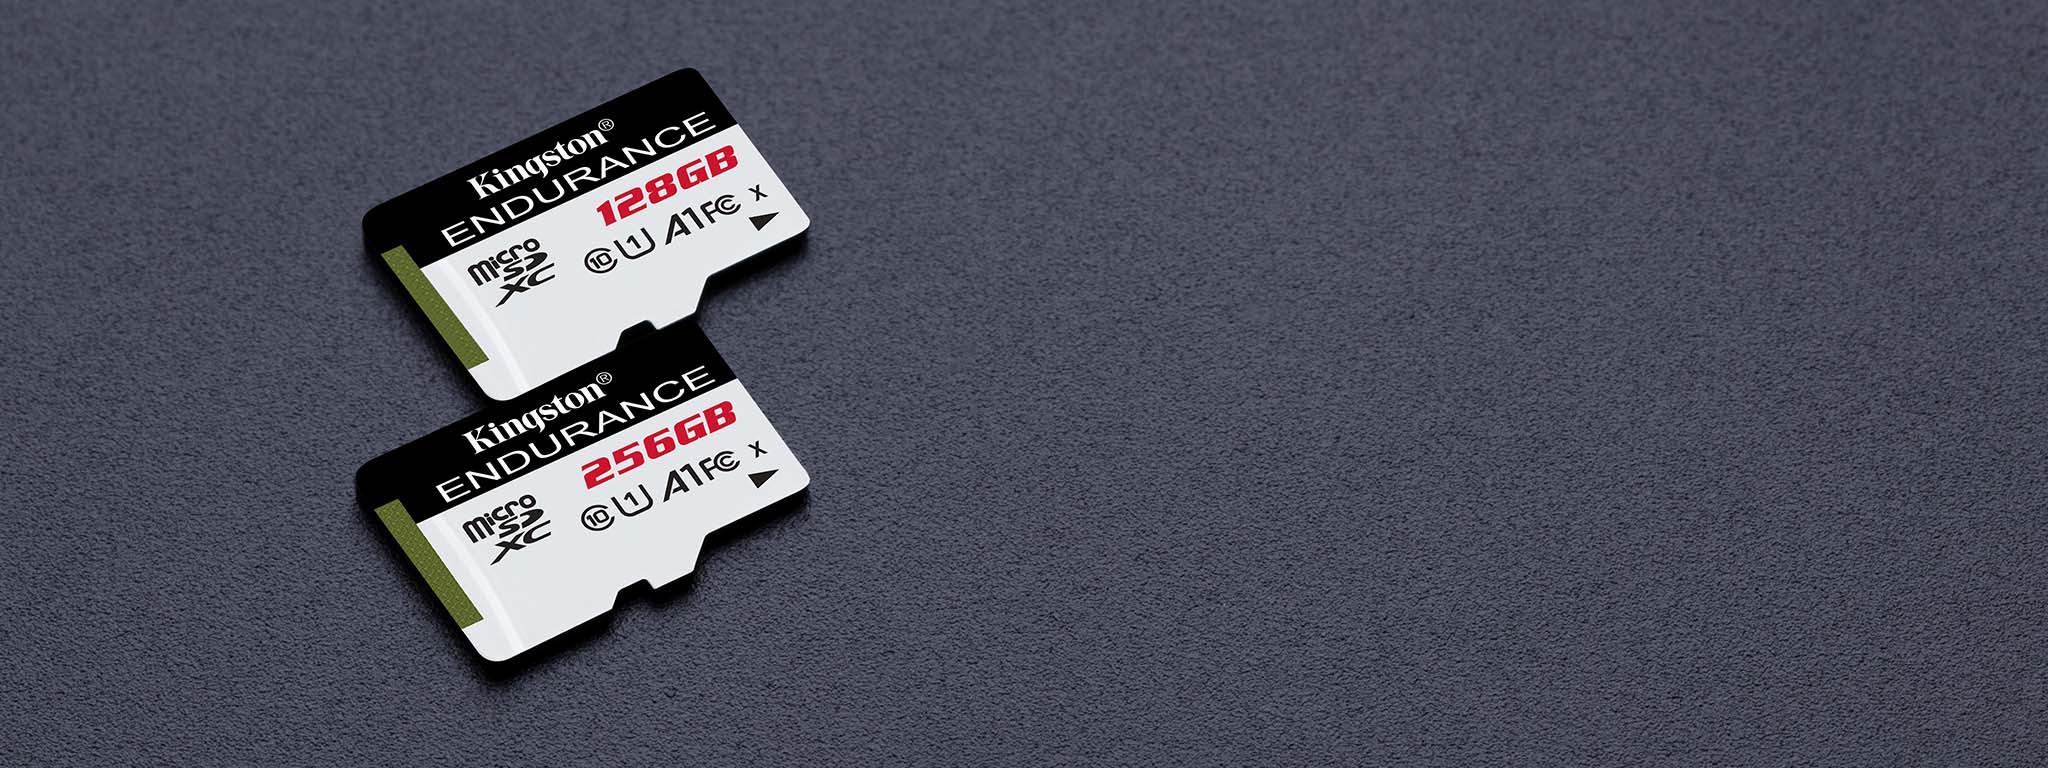 Две карты памяти High-Endurance microSD объемом 128 ГБ и 64 ГБ на черной поверхности